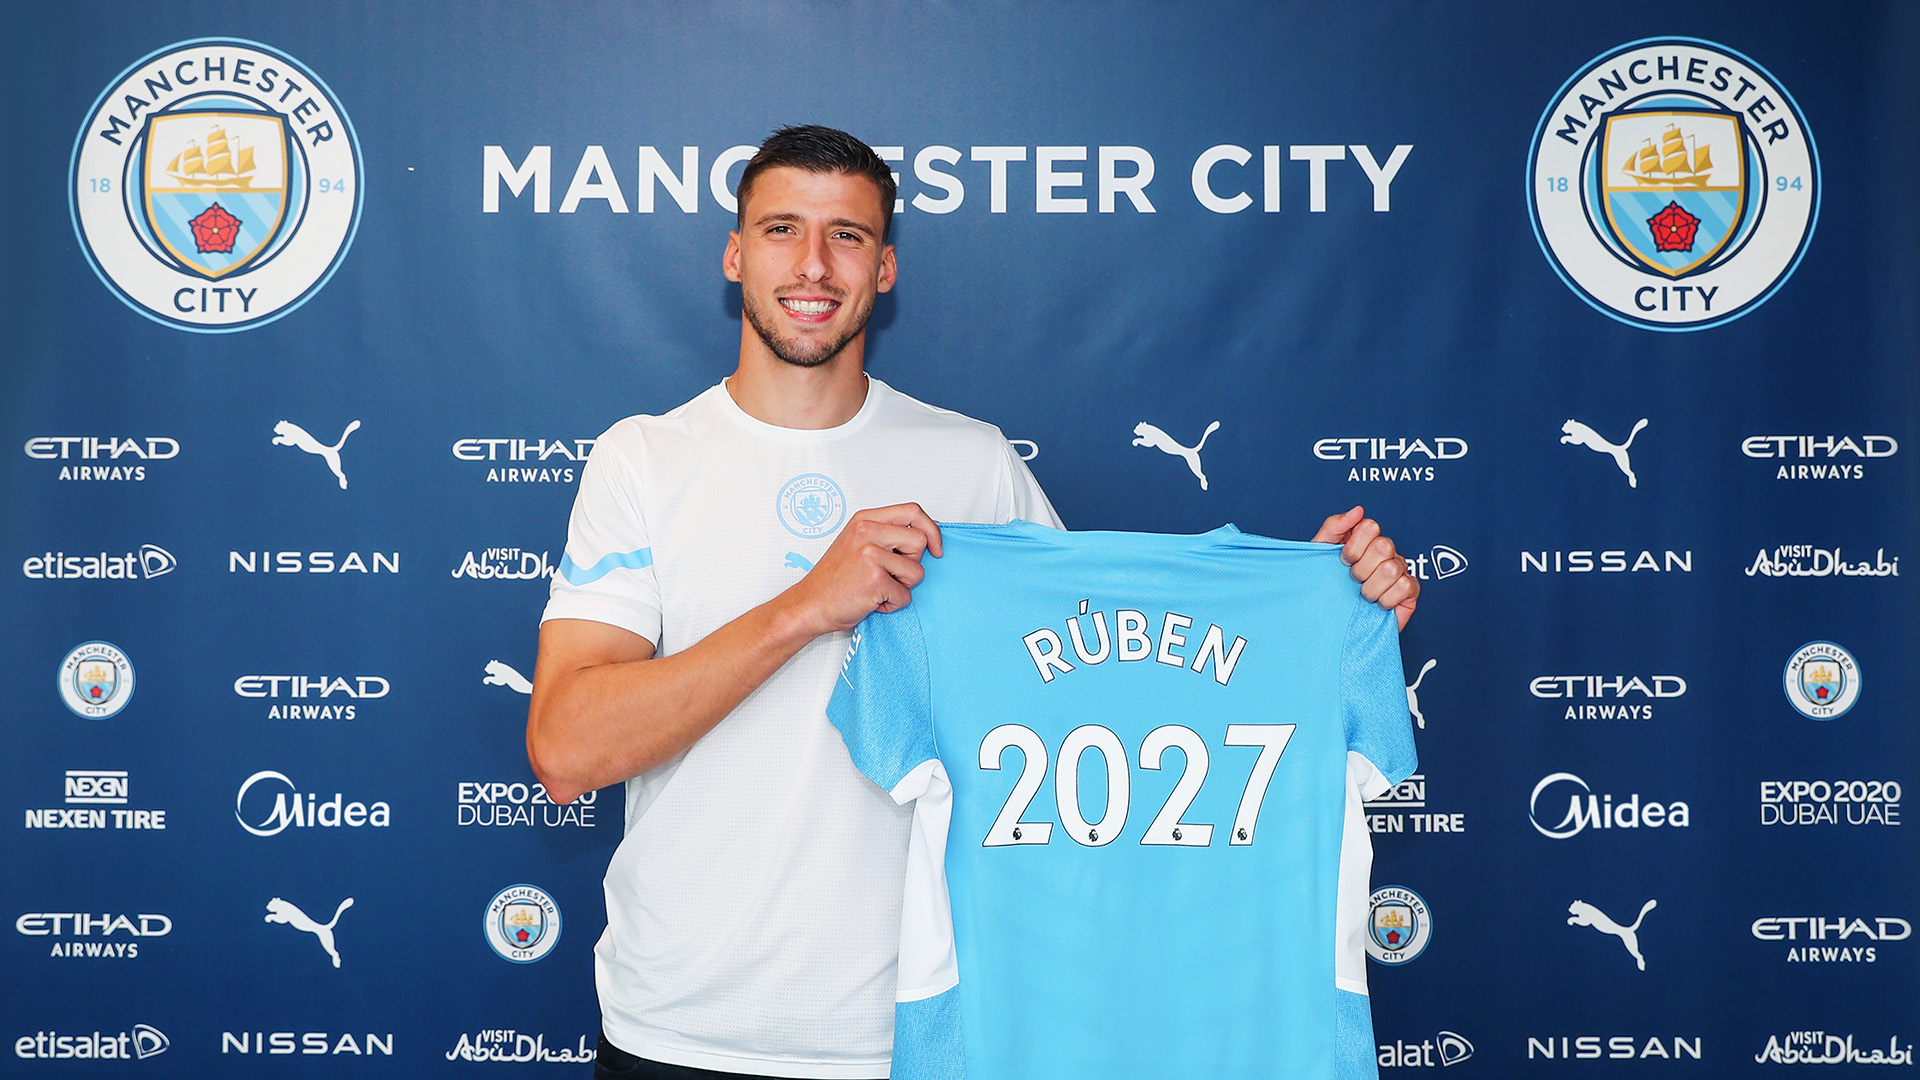 OFFICIEL - Manchester City blinde Ruben Dias et le prolonge jusqu'en 2027